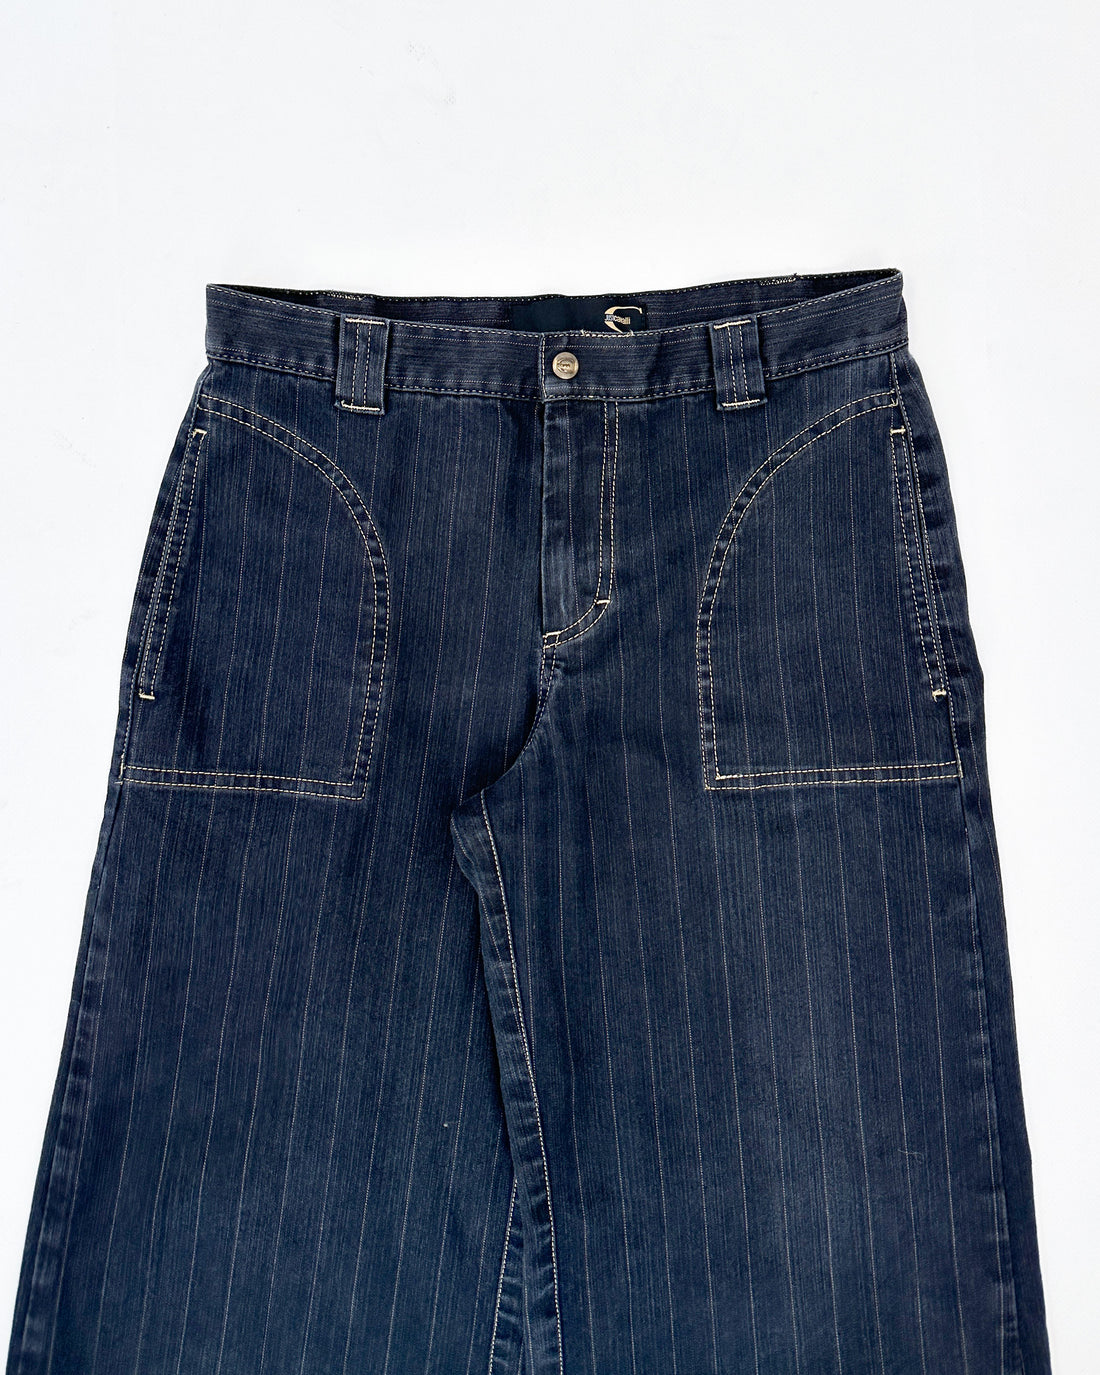 Just Cavalli Striped Denim Pants 1990's